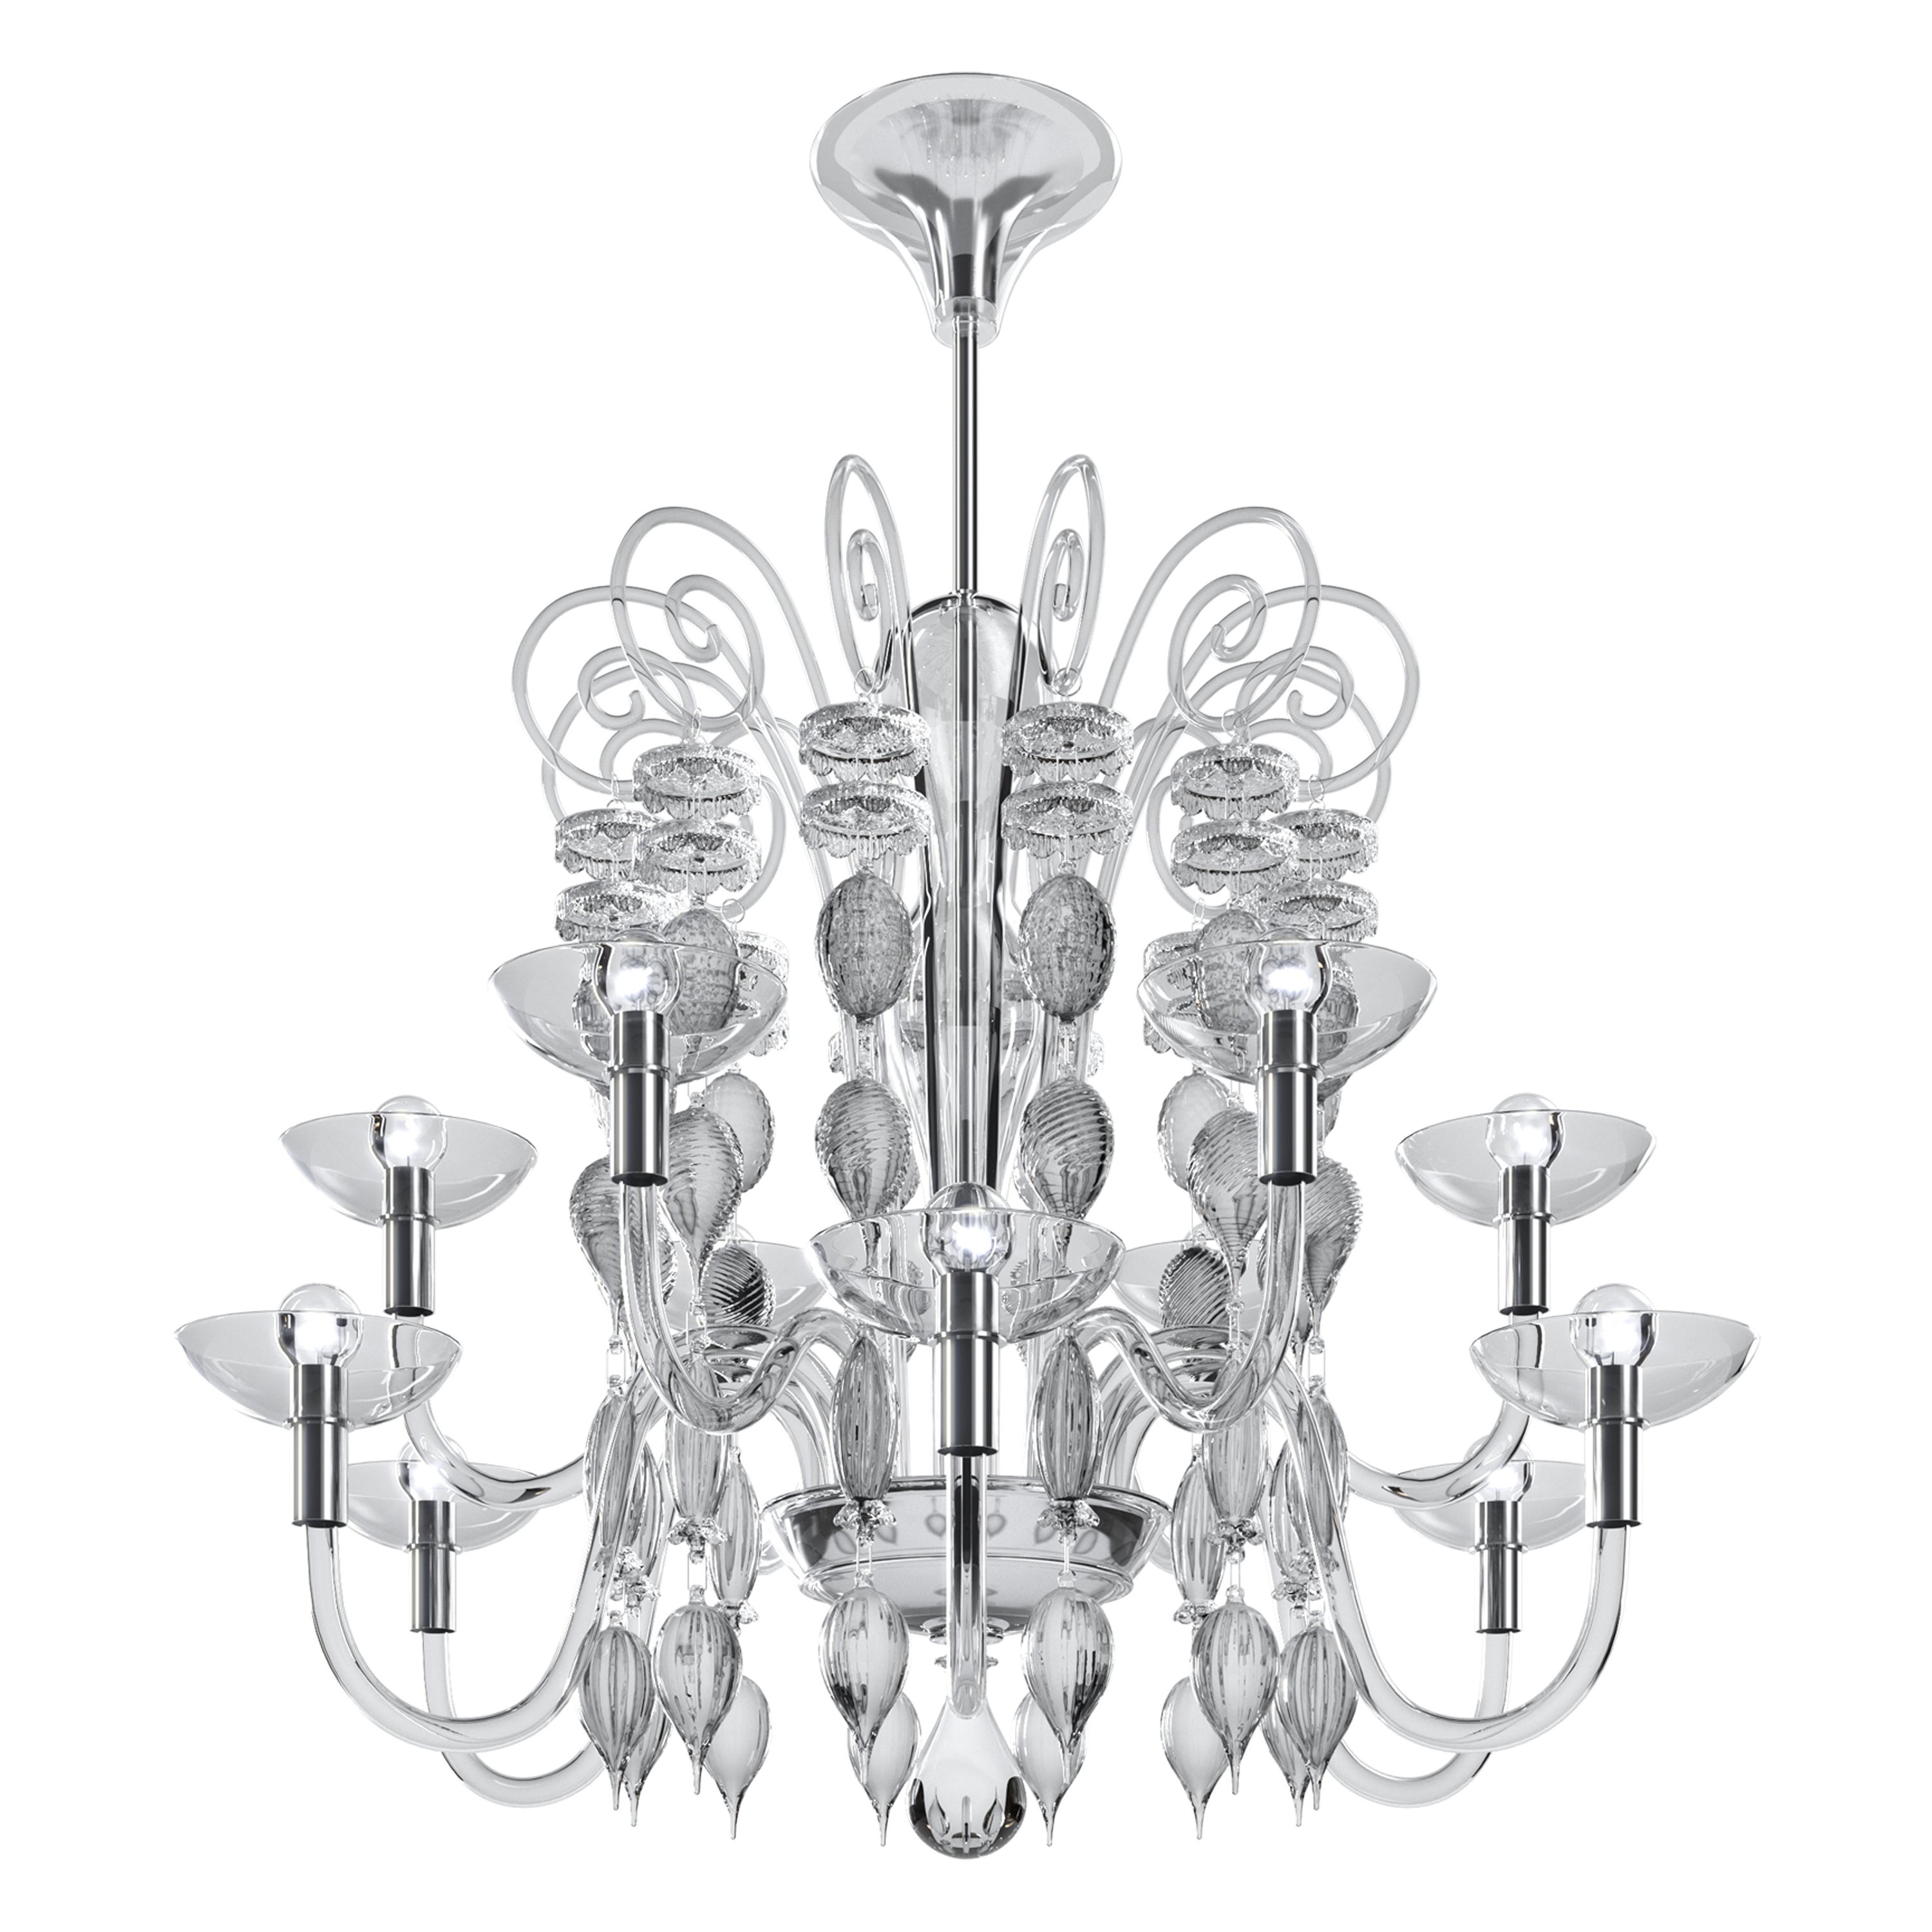 Lámpara neoclásica de cristal soplado de Murano, diseño de Carlo Scarpa Venini Oficial